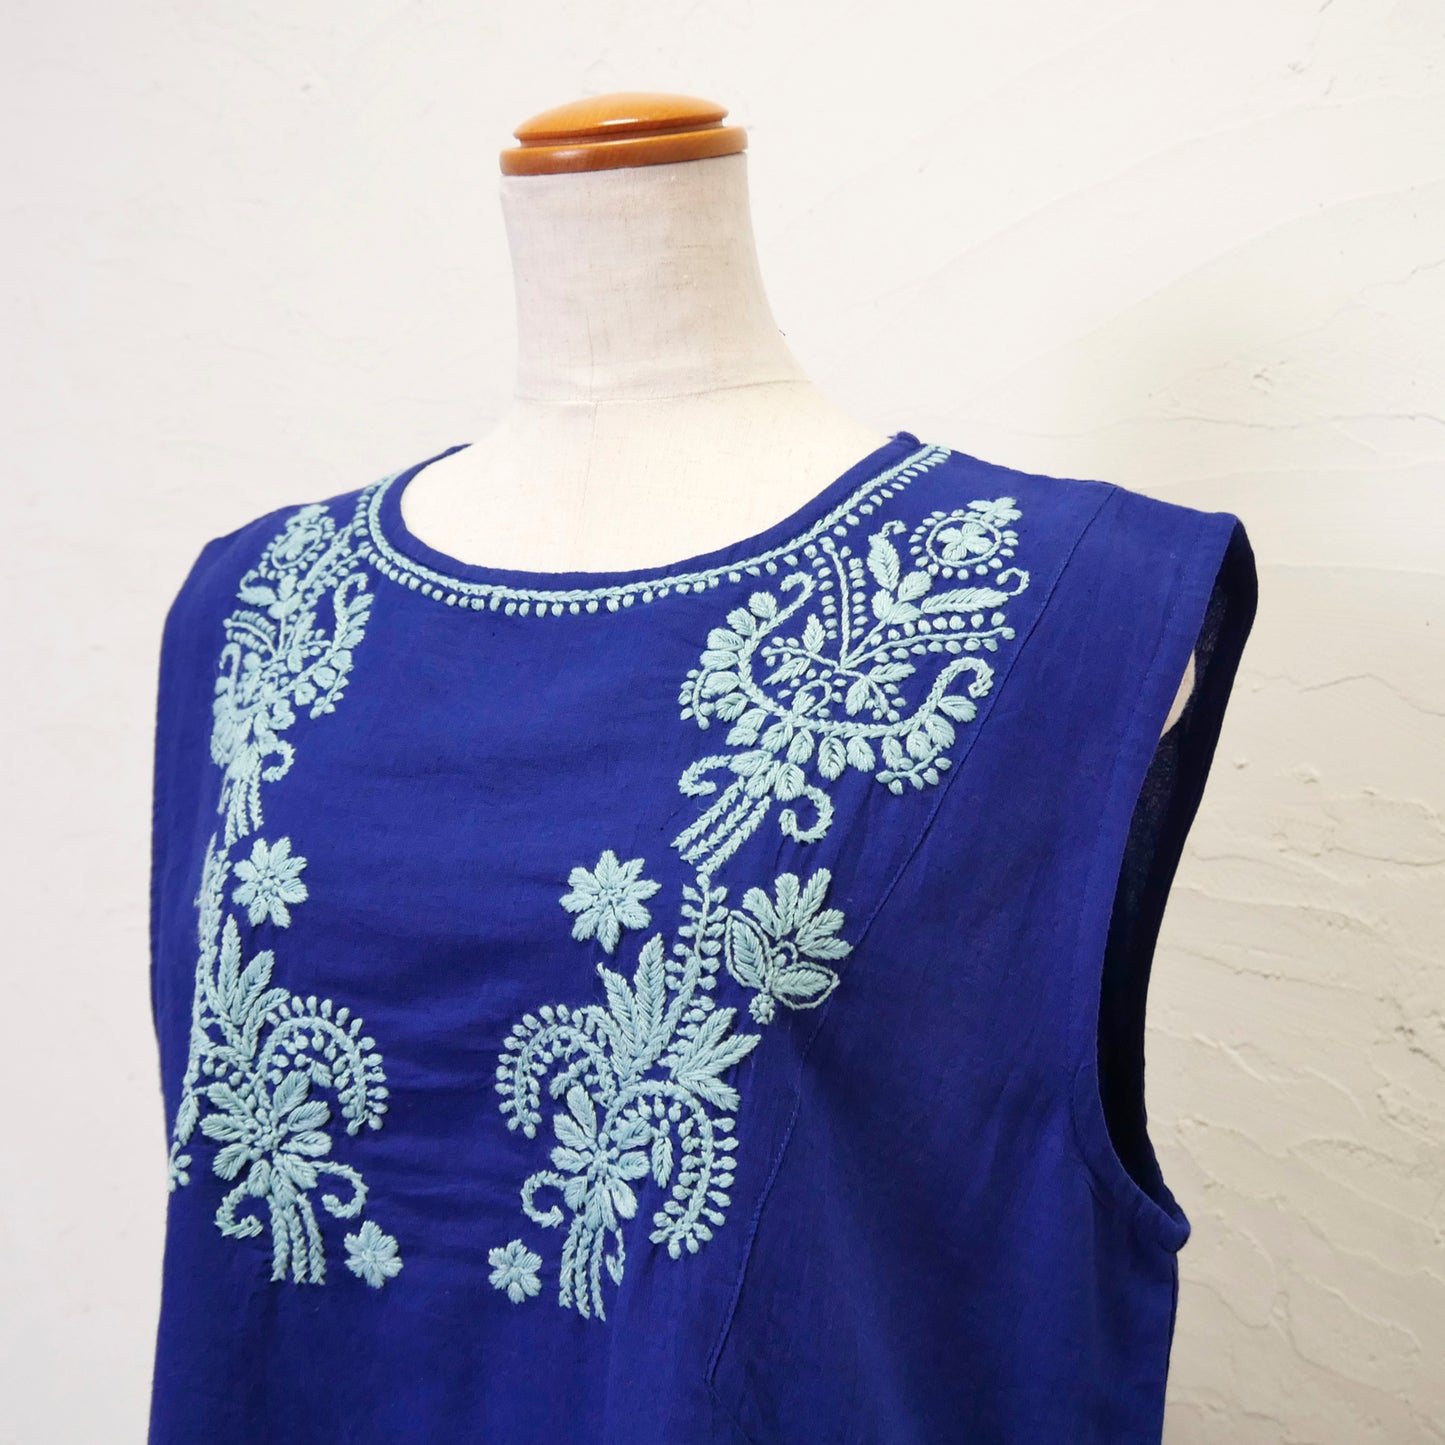 Безрукавный пуловер с вышивкой Лакхнау из хлопка и льна